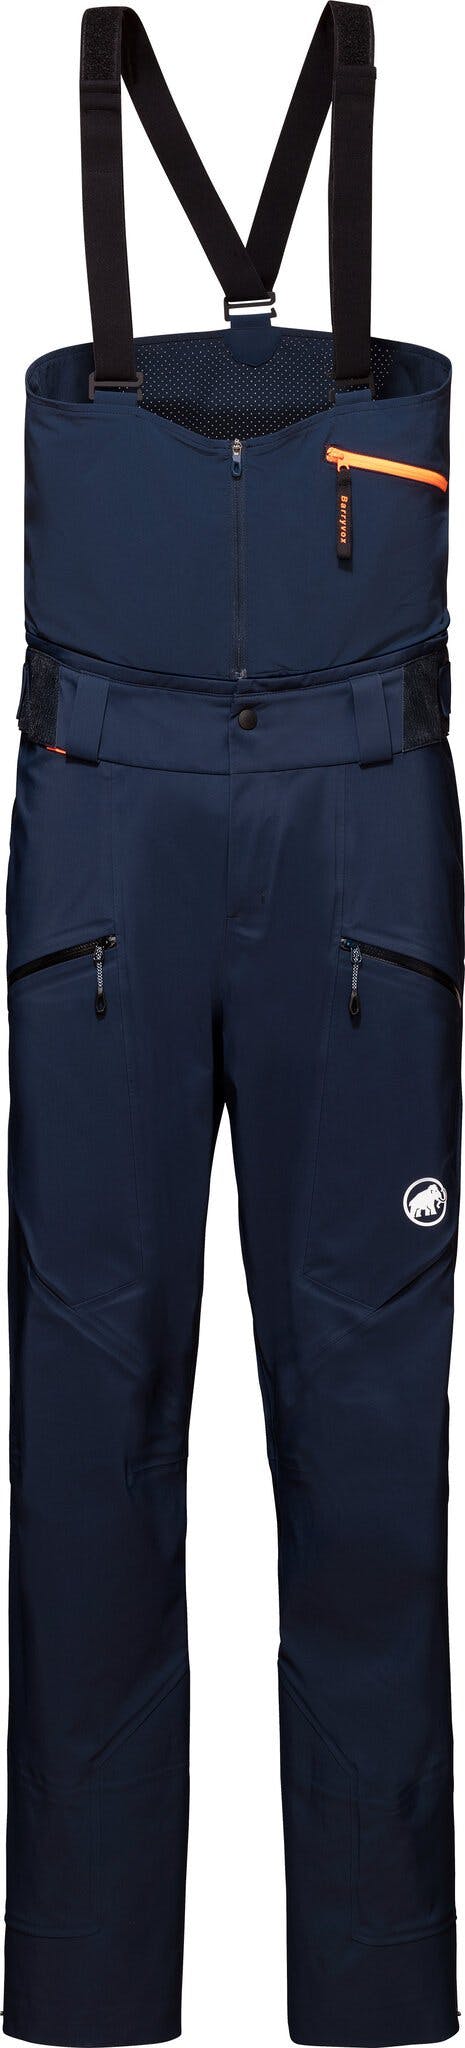 Product image for Haldigrat HS Pants - Men's